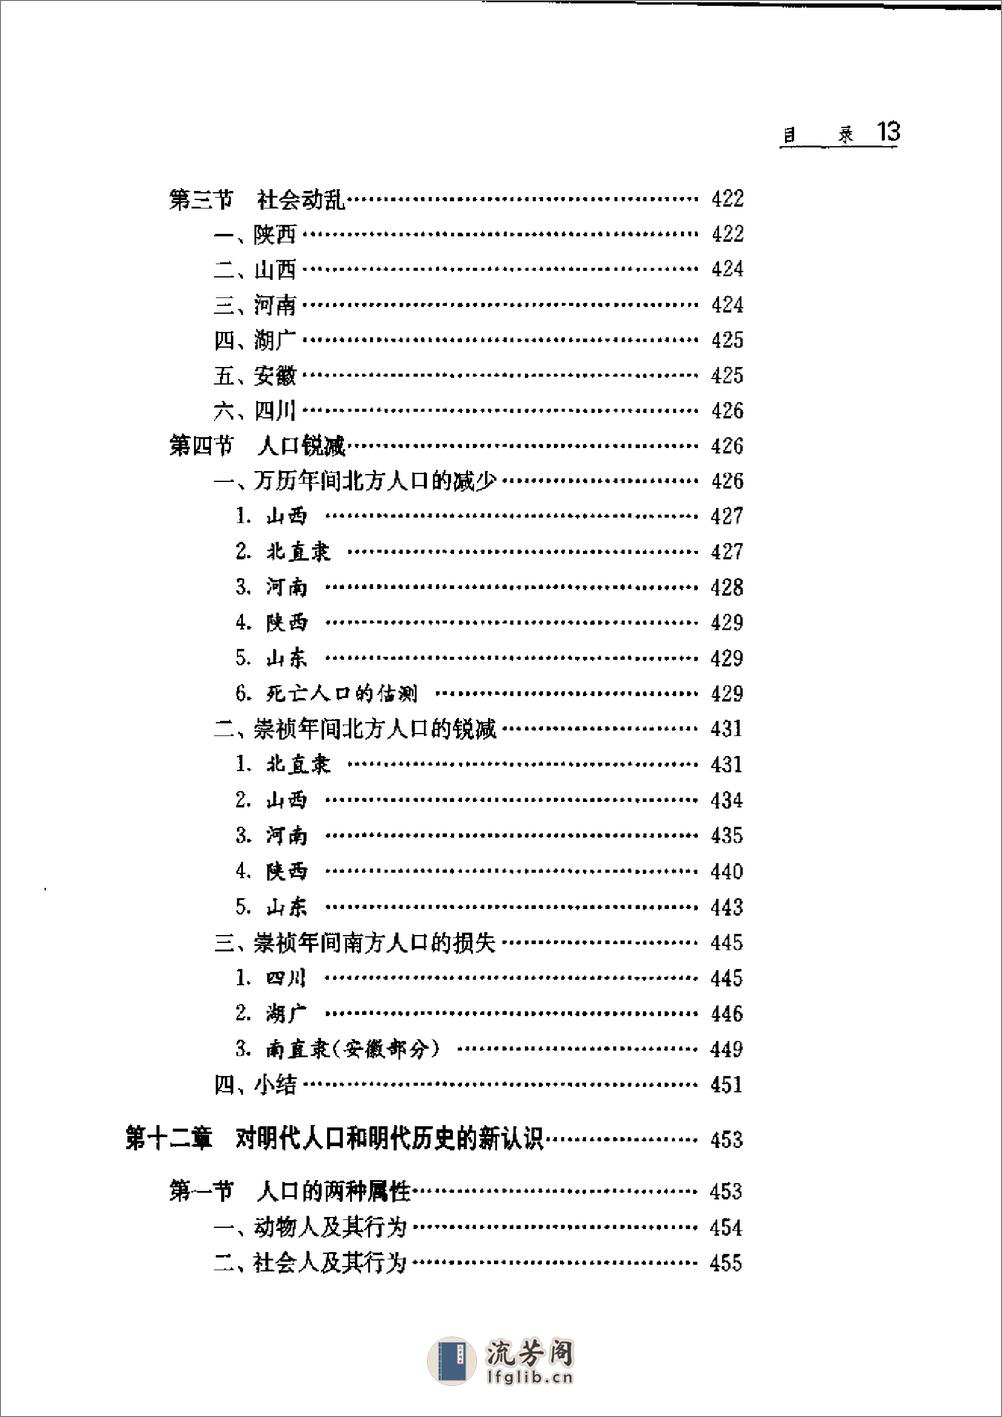 中国人口史 第4卷 明时期 - 第18页预览图